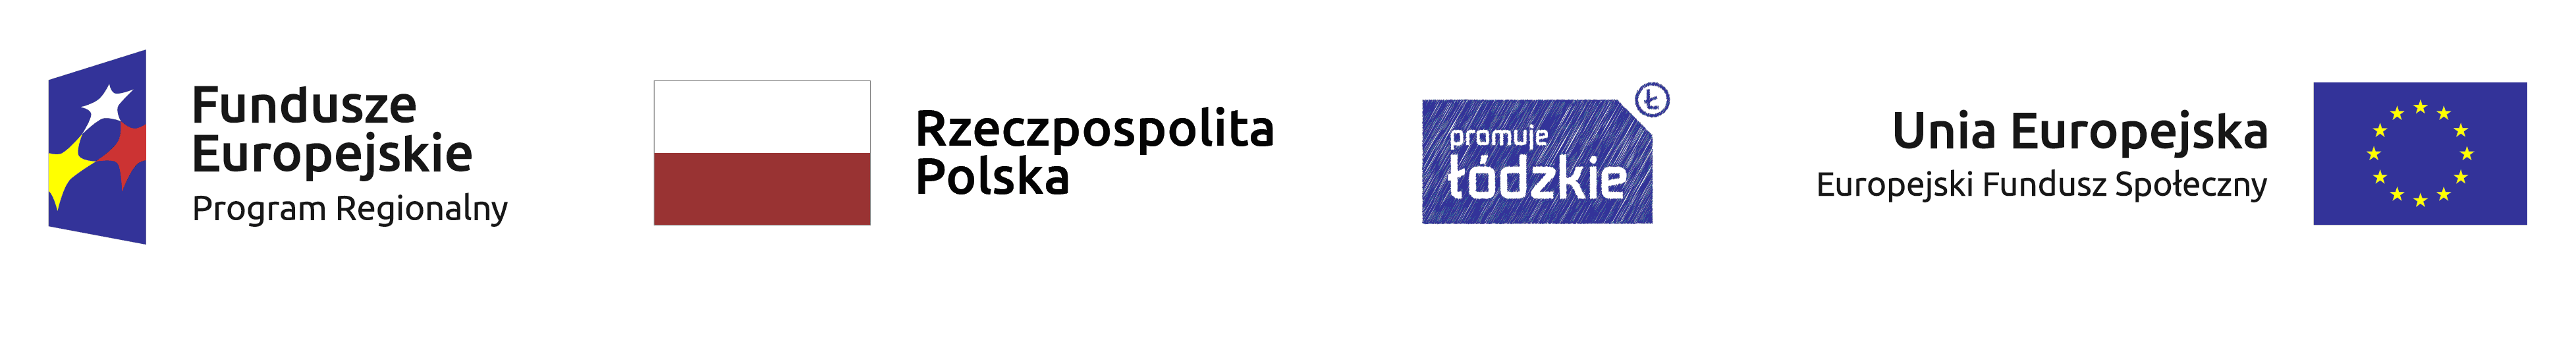 Logotypy: Fundusze Europejskie. Program Regionalny; Rzeczpospolita Polska; Łódzkie promuje; Unia Europejska. Europejski Fundusz Społeczny 